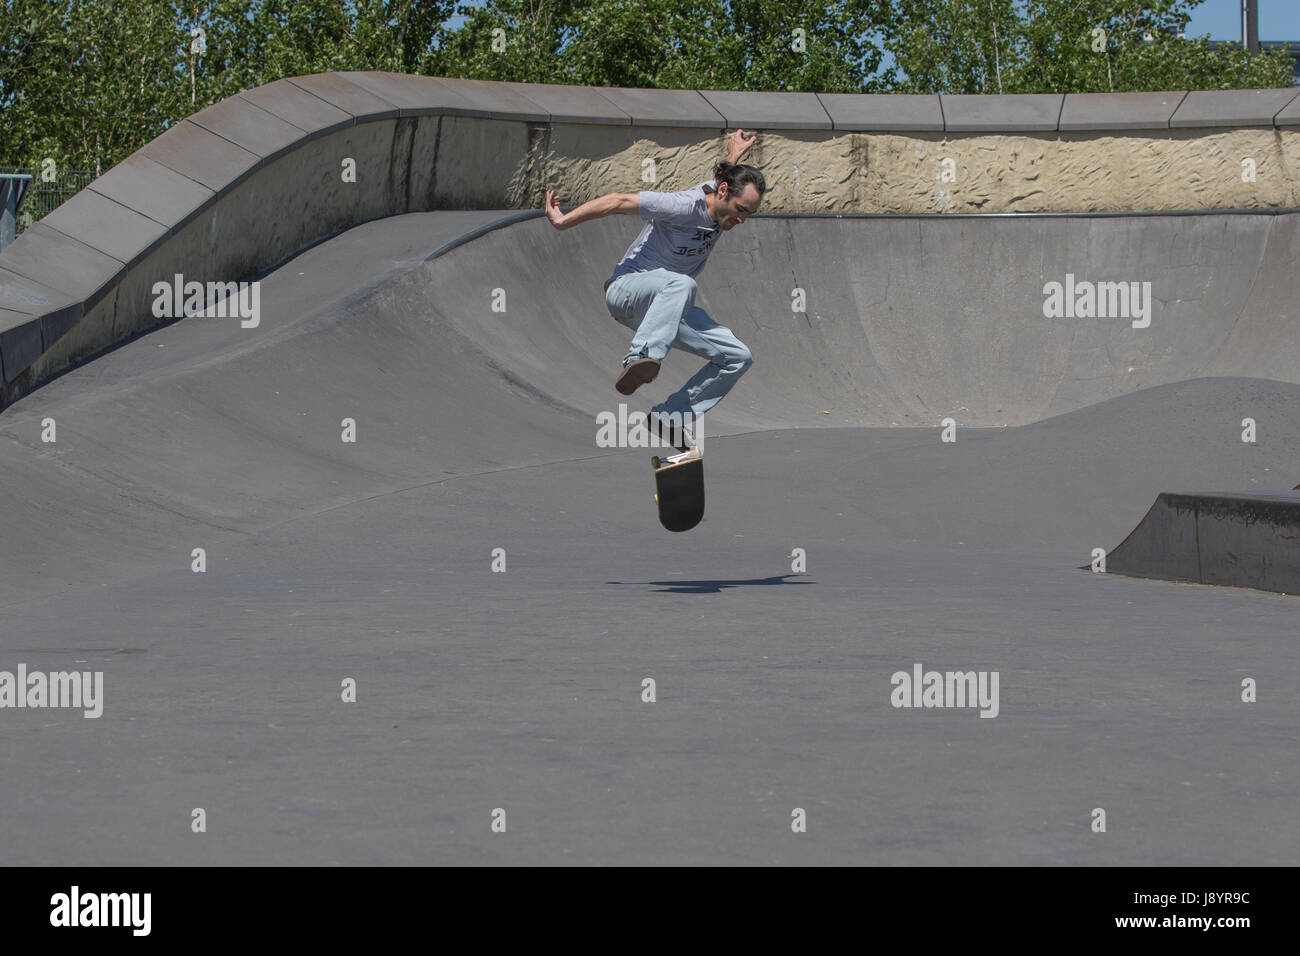 Ein Skateboarder Ausführung einen Kickflip in der Luft Stockfoto